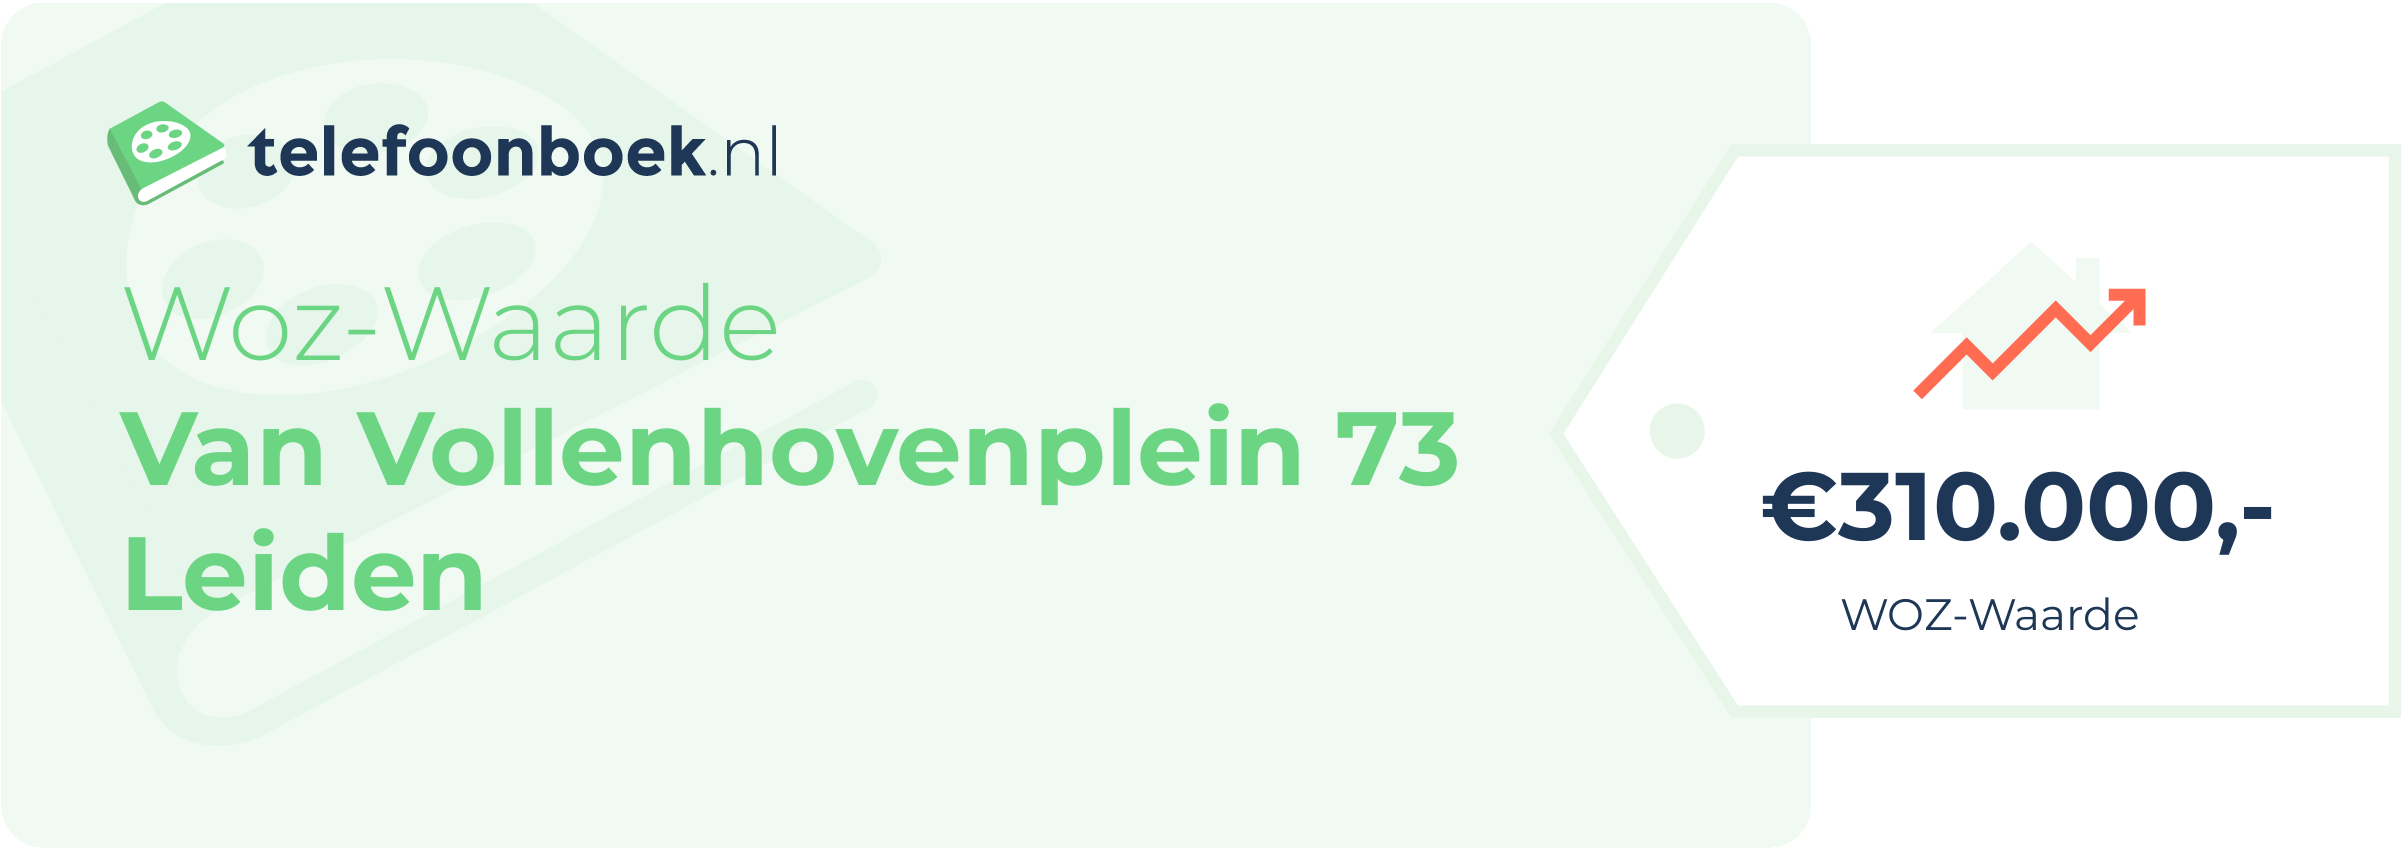 WOZ-waarde Van Vollenhovenplein 73 Leiden